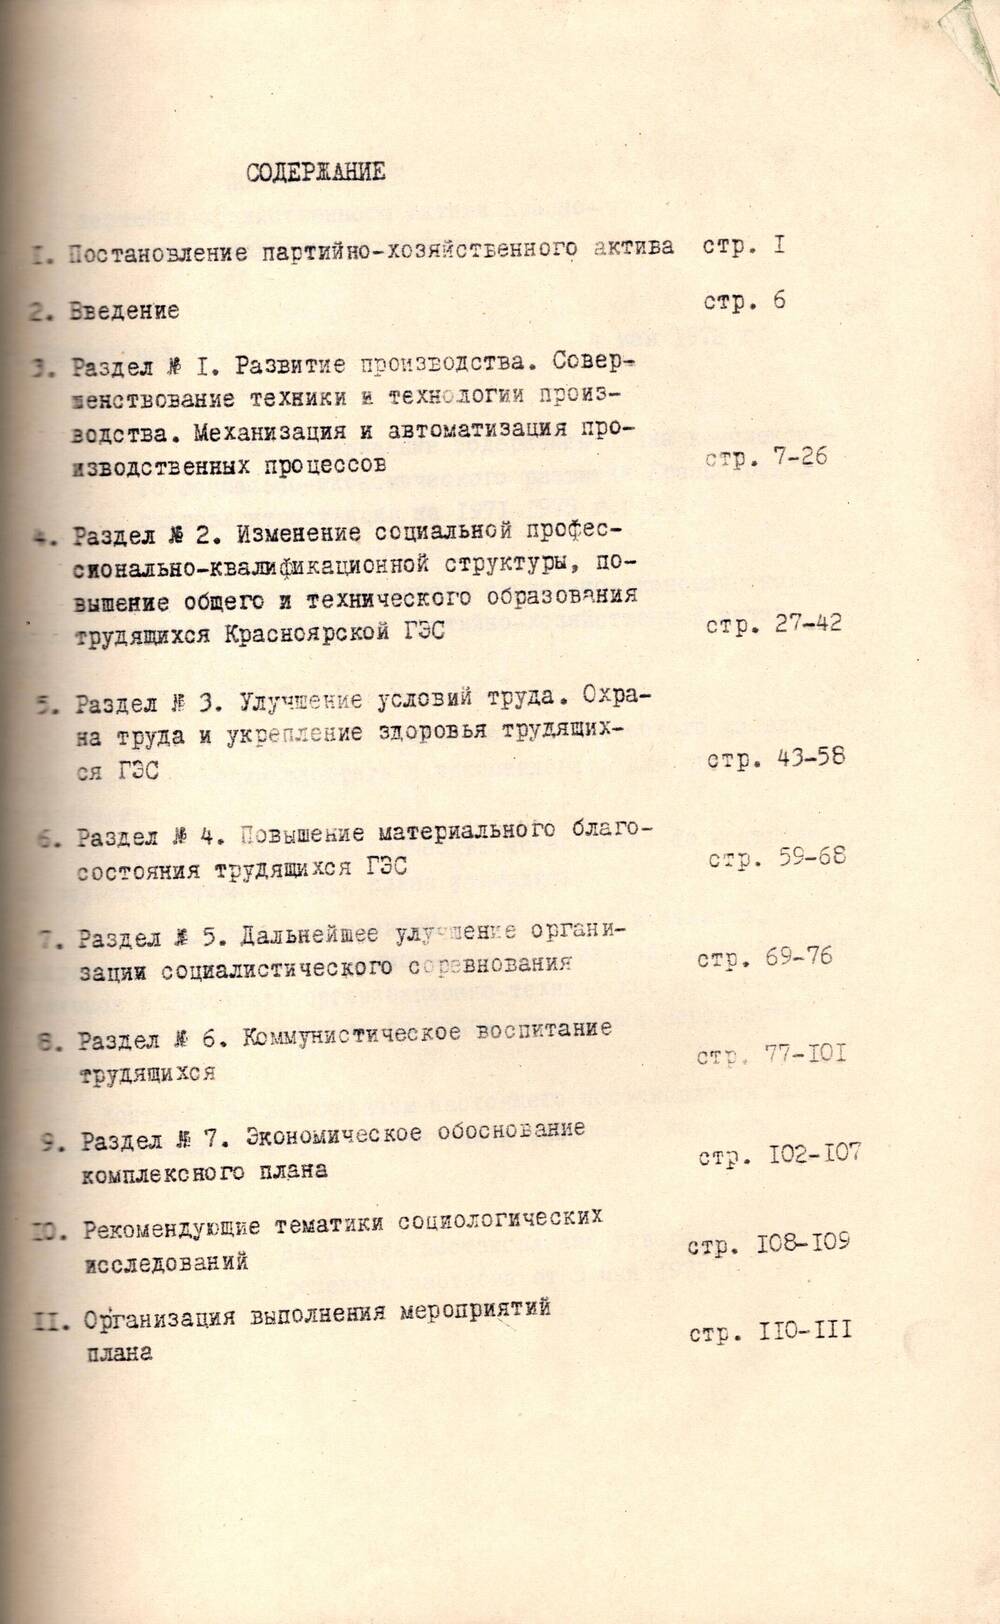 План комплексного социально-экономического развития Красноярской ГЭС на 1971-1975 гг.